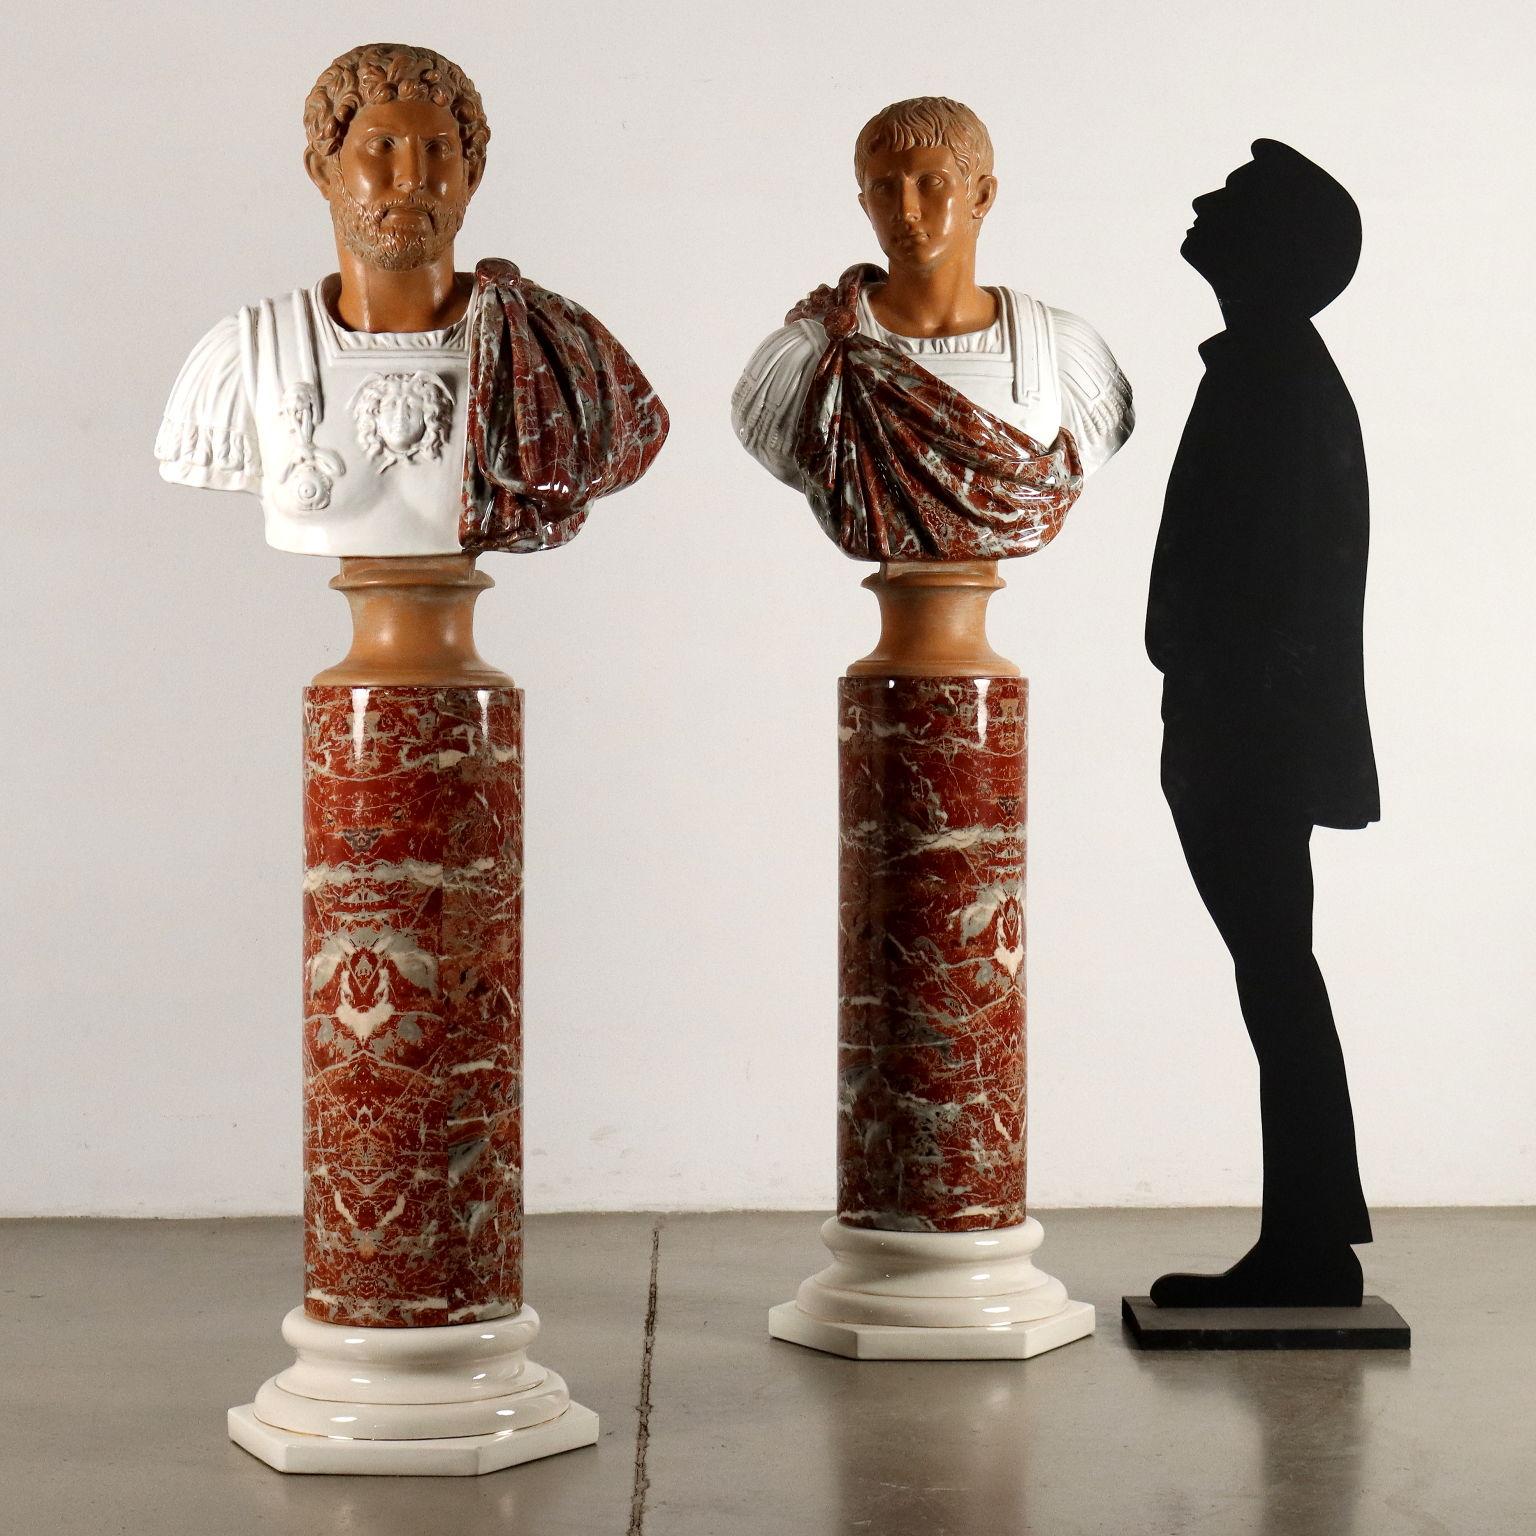 Paar Keramikbüsten römischer Kaiser auf Keramiksäulen, Produktion Tommaso Barbi 1970er Jahre. Säulen mit sechseckigem Sockel aus weiß glasierter Keramik, verziert mit goldenen Kedern, Schaft aus rotem Breccia-Marmor; Büsten, die die Kaiser Hadrian